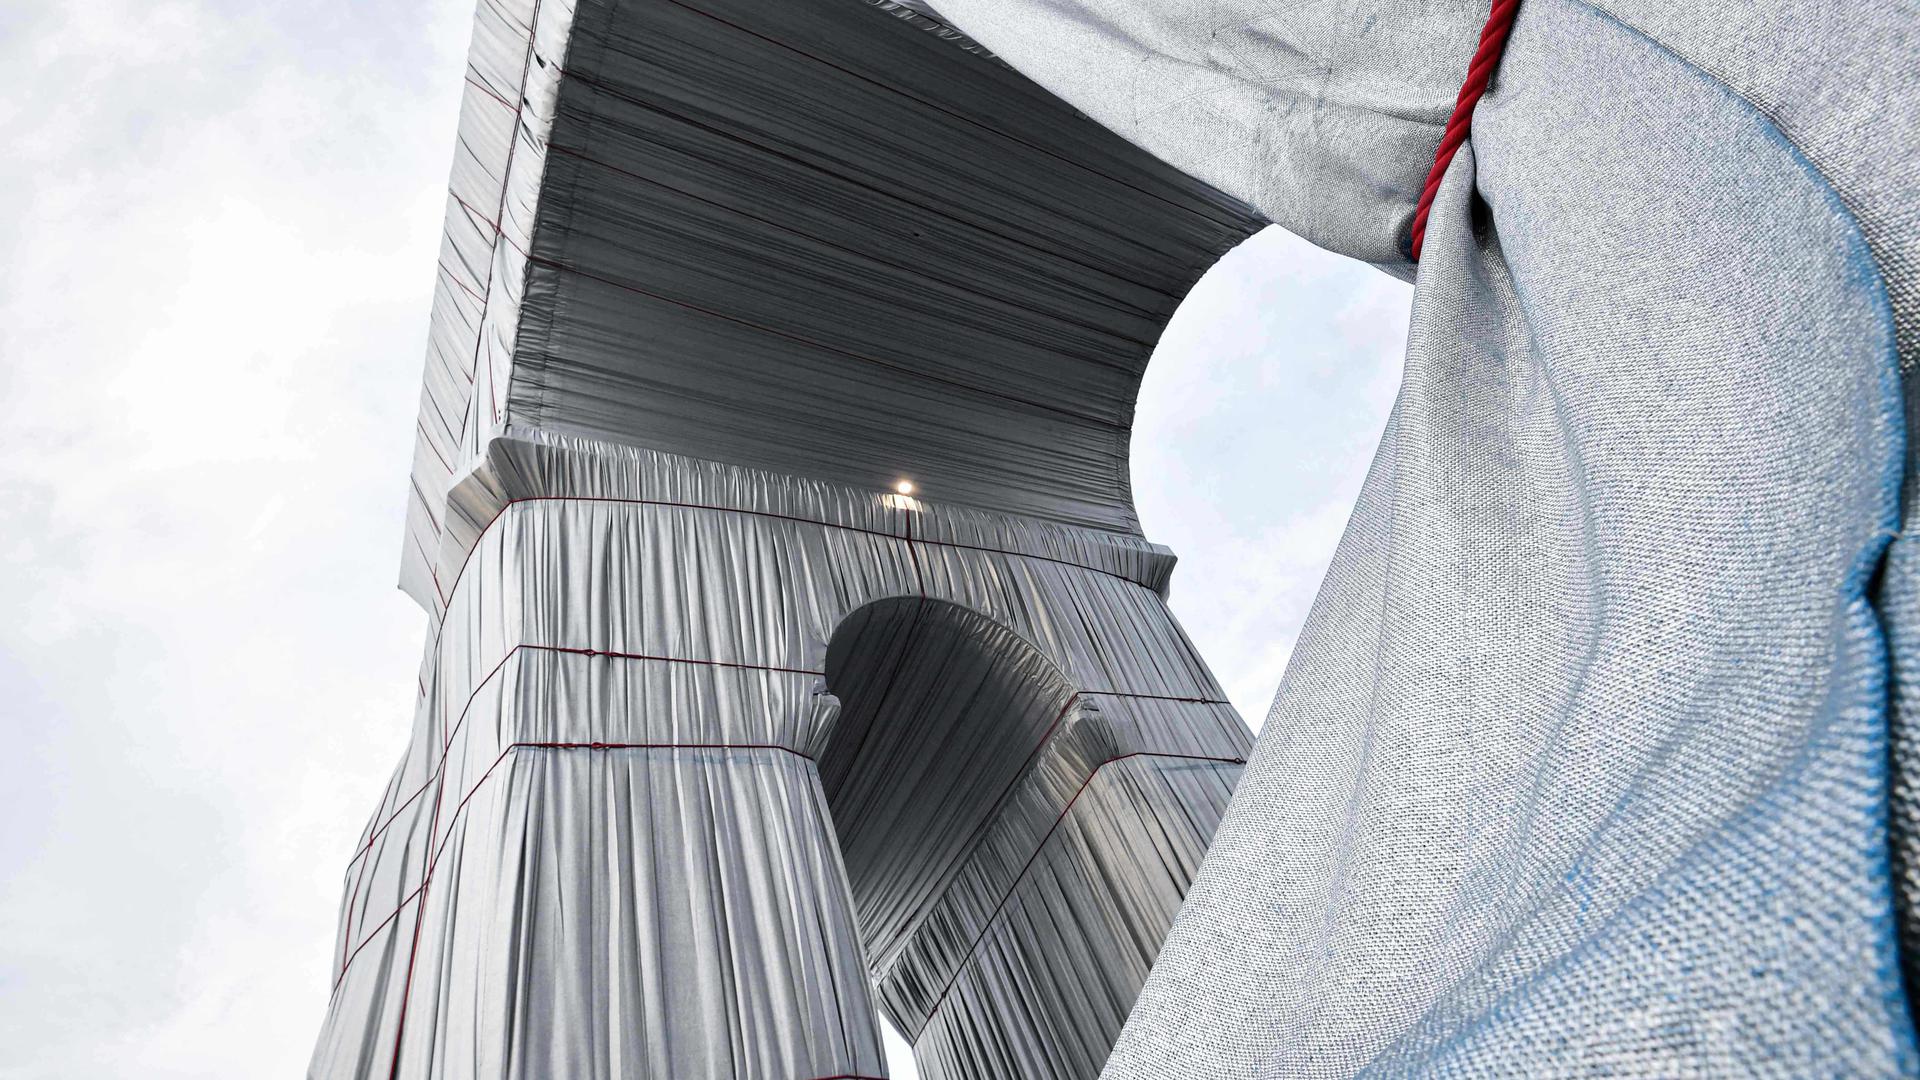 Der Arc de Triomphe (Triumphbogen) ist mit Stoff verhüllt. Das Projekt «L'Arc de Triomphe, Wrapped» der verstorbenen Künstler Christo und Jeanne-Claude wird vom 18. September bis zum 3. Oktober zu sehen sein. +++ dpa-Bildfunk +++